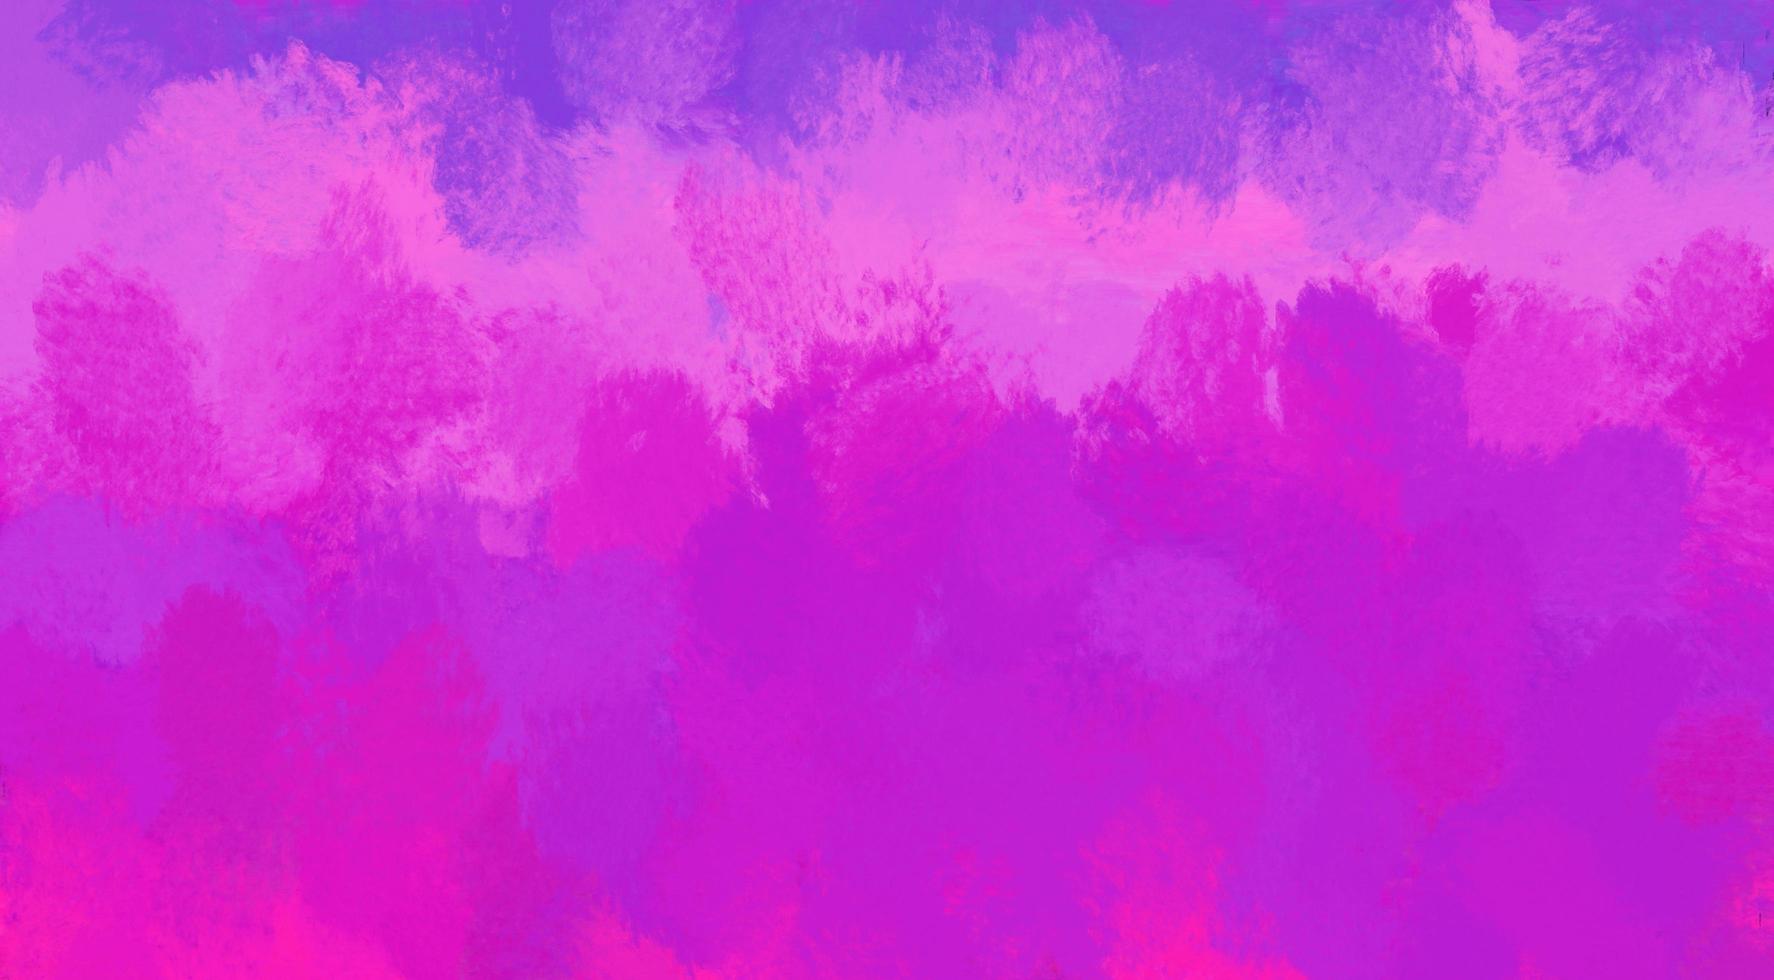 struttura della pittura ad acquerello, toni viola e rosa pastello sbiaditi foto